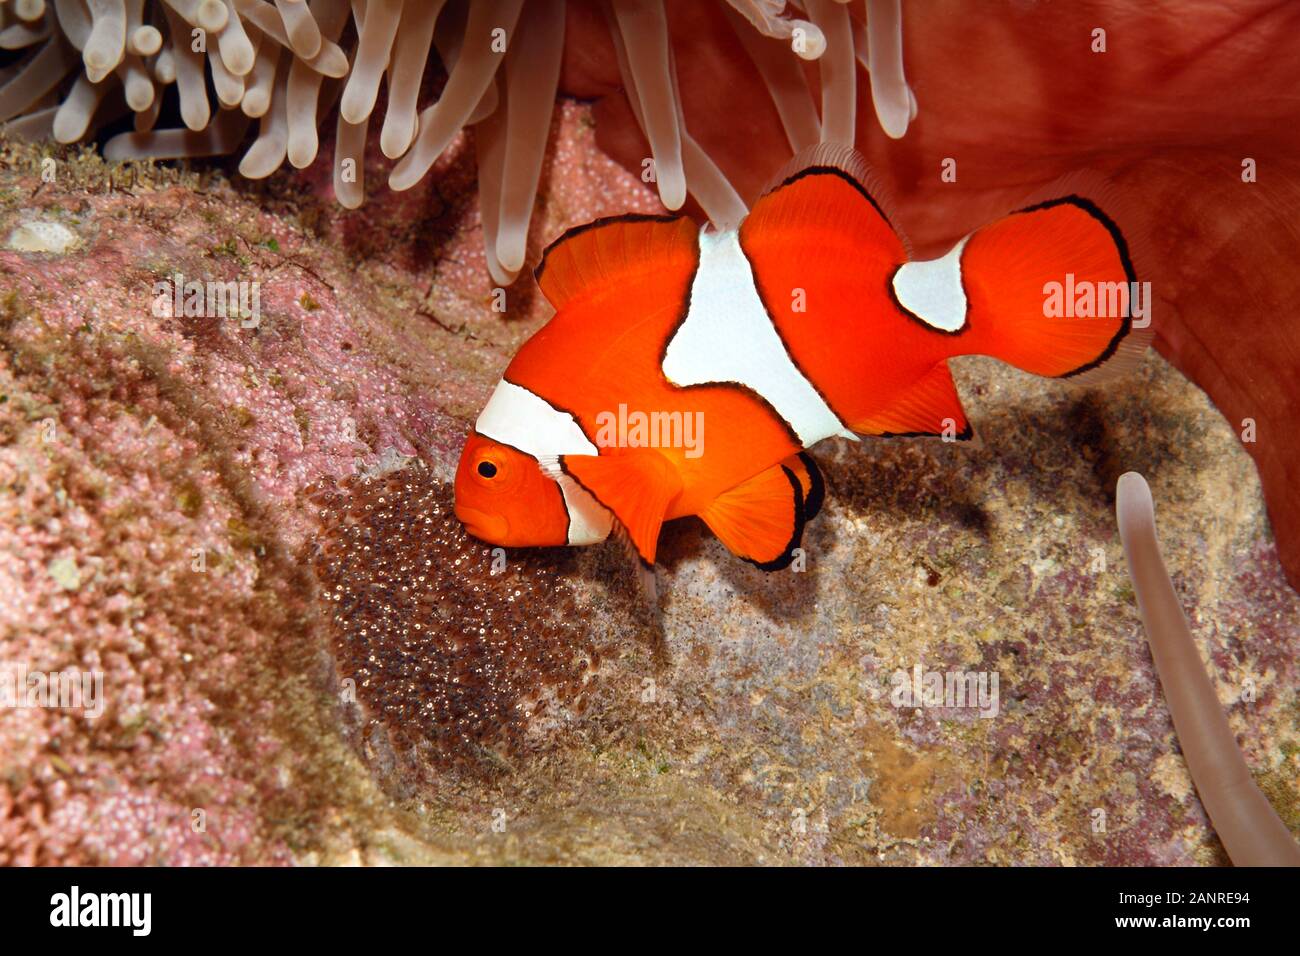 Clownfish, Amphiprion percula, pesci maschi aerare uova deposte deselezionata sottostante substrato l'ospite magnifico mare Anemone, Heteractis magnifica Foto Stock